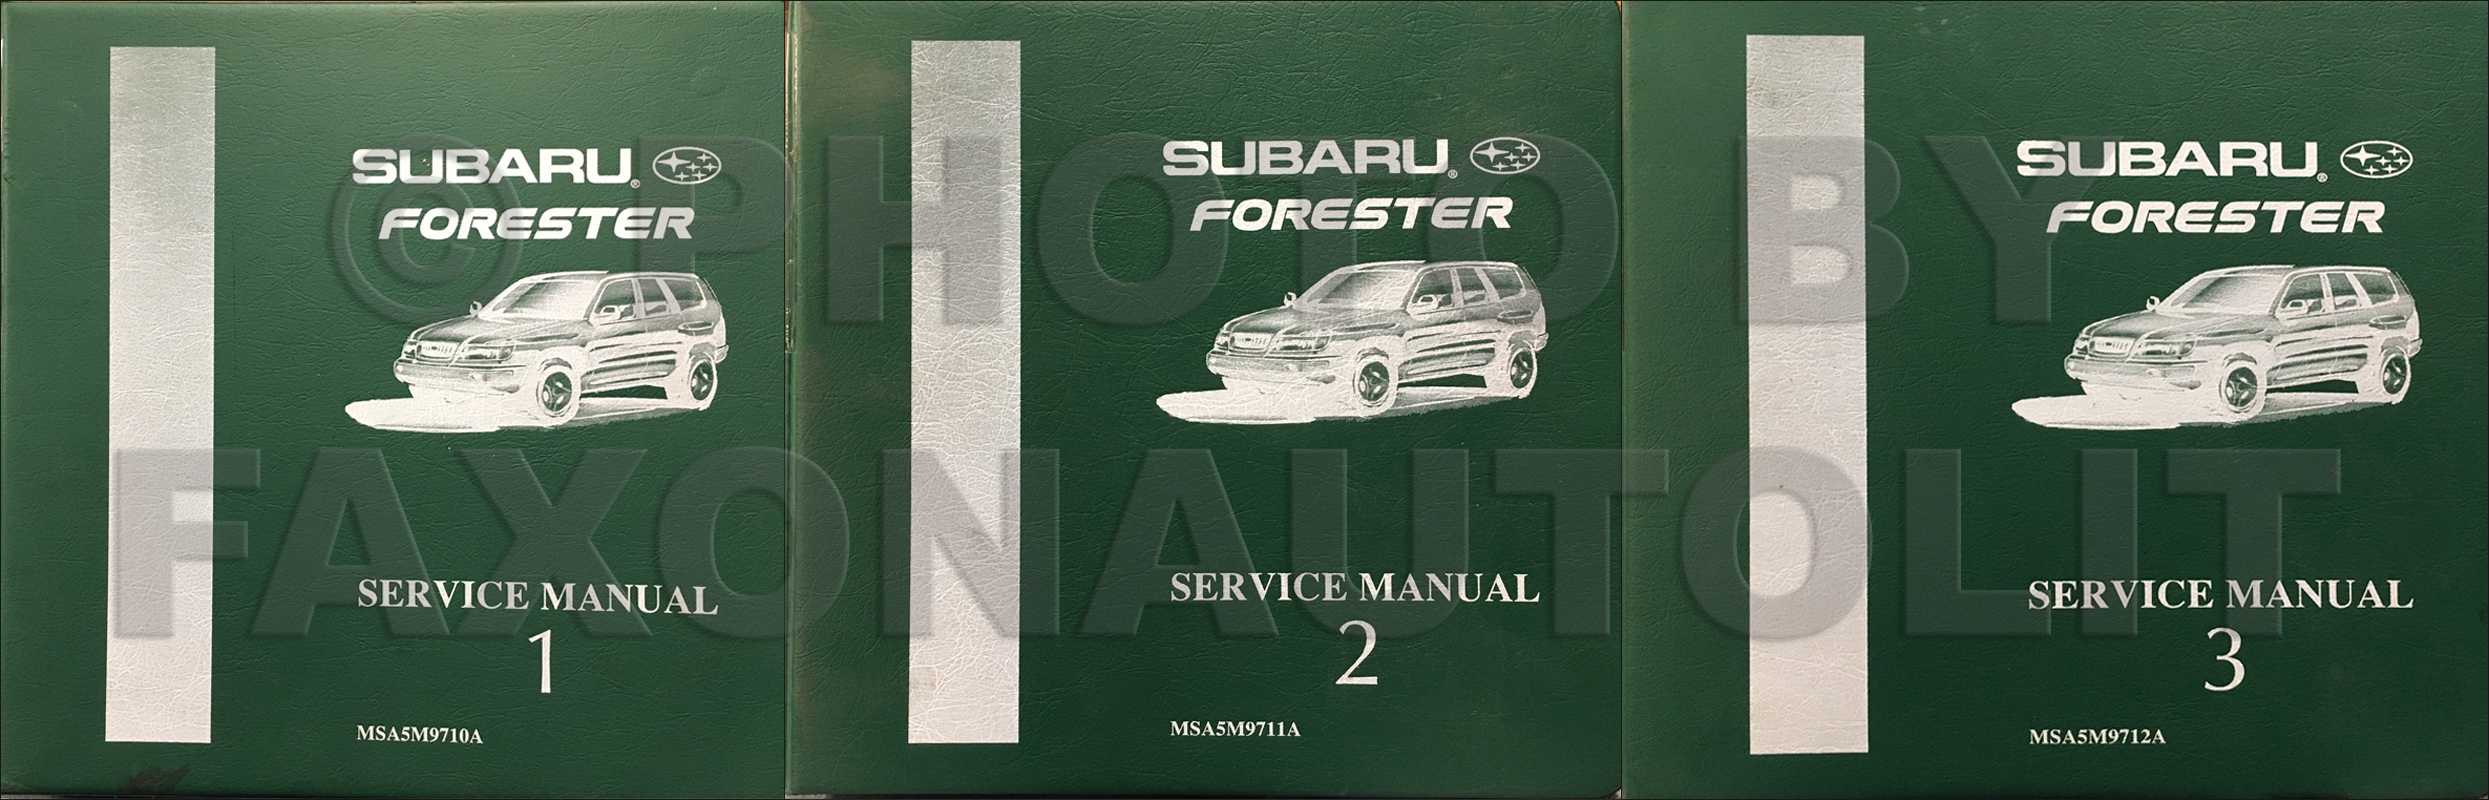 1999 Subaru Forester Repair Manual Original 6 Volume Set 